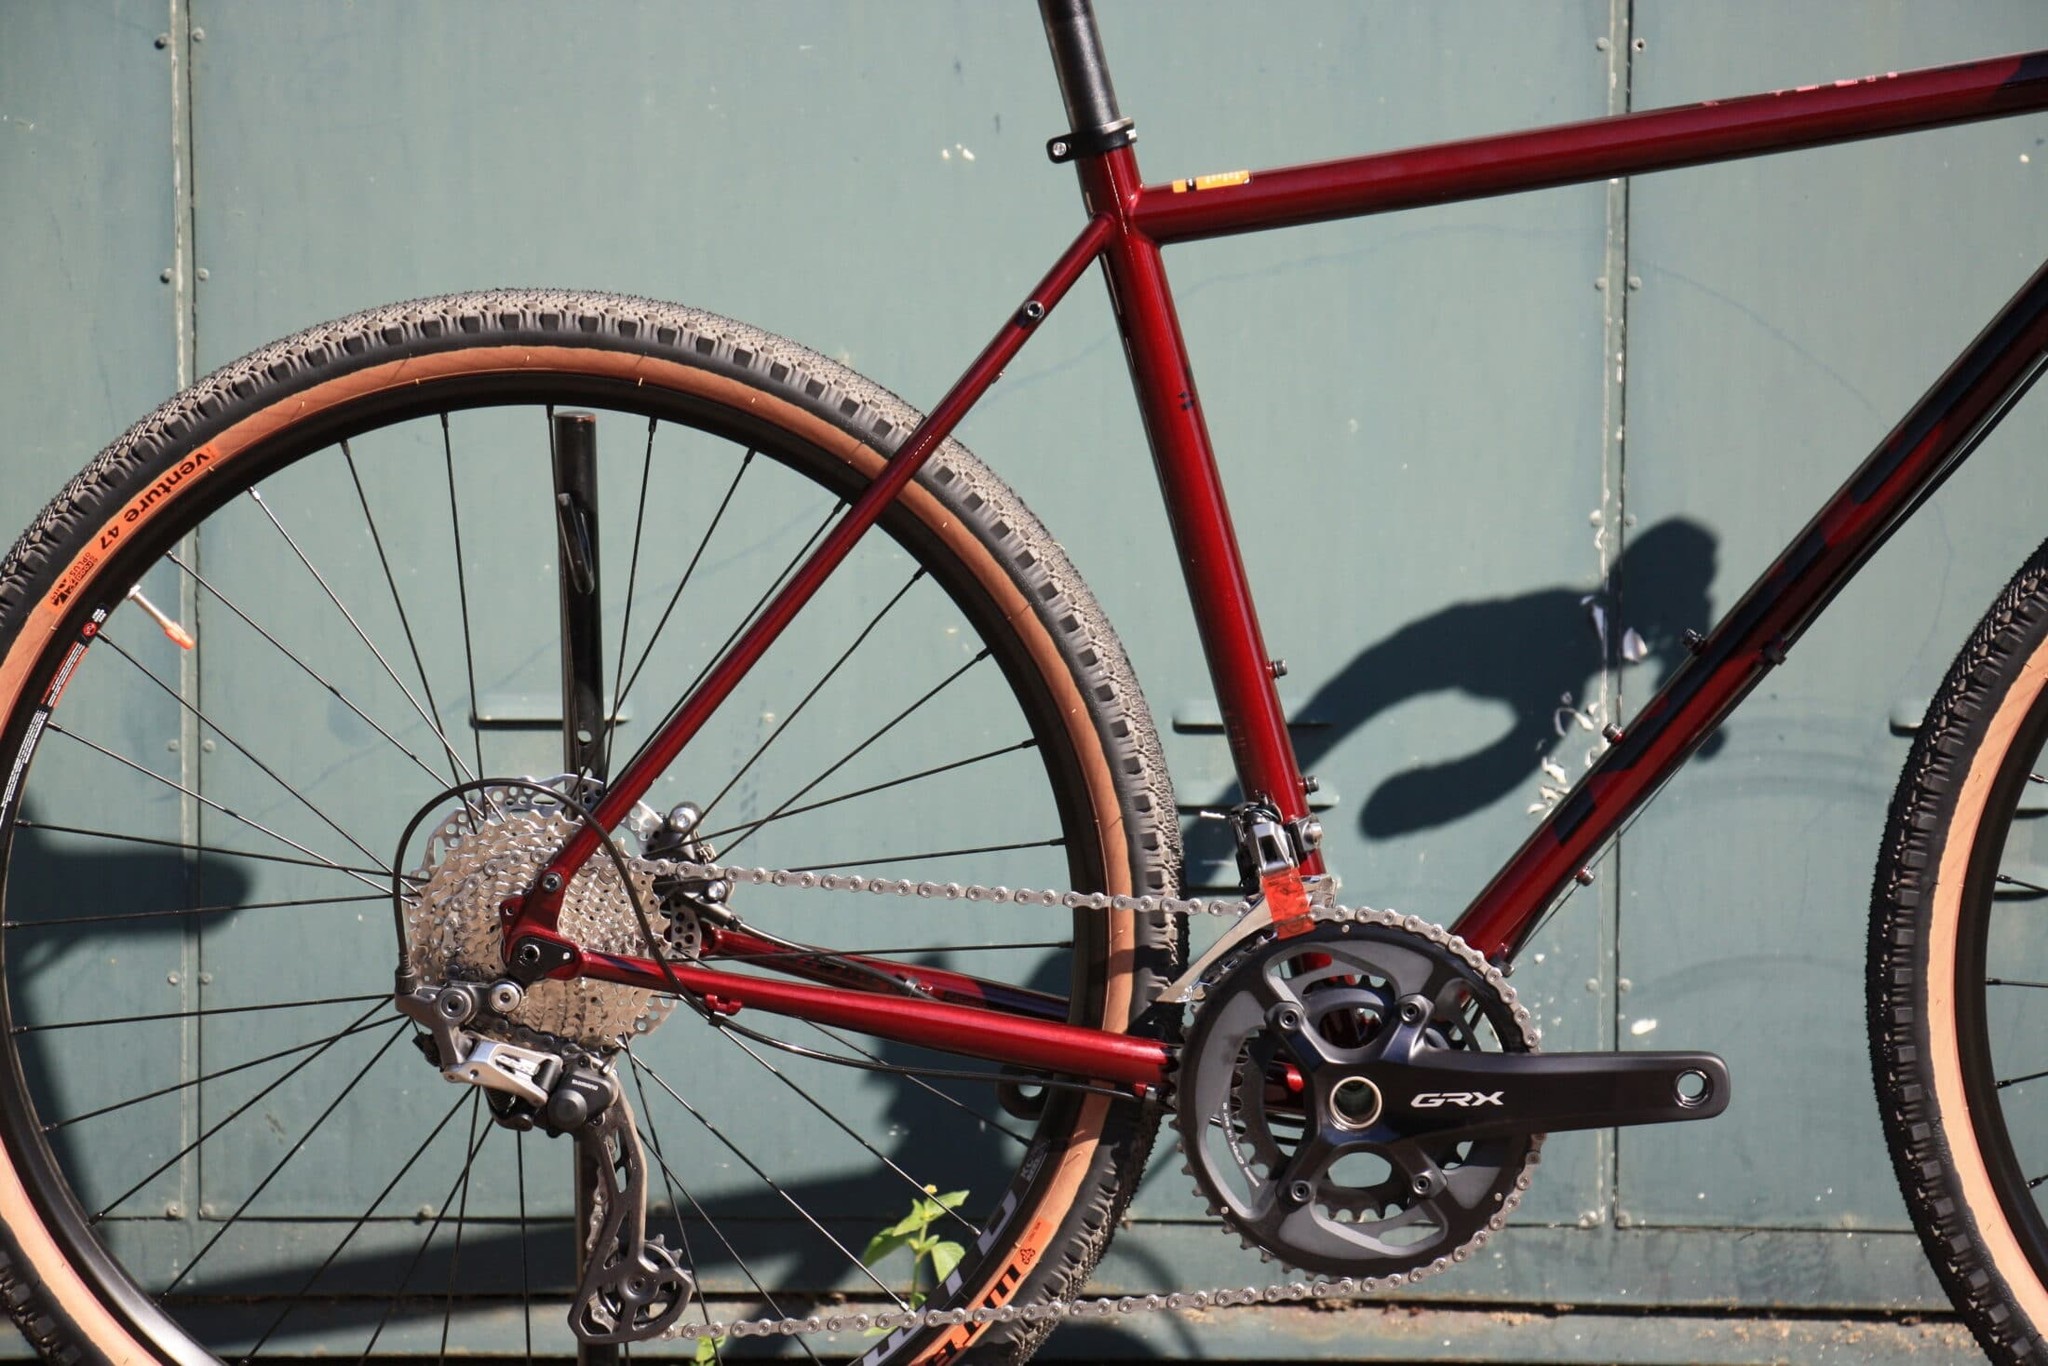 Ziekte staal controller Kona Rove LTD 2021 | BikeSuperior